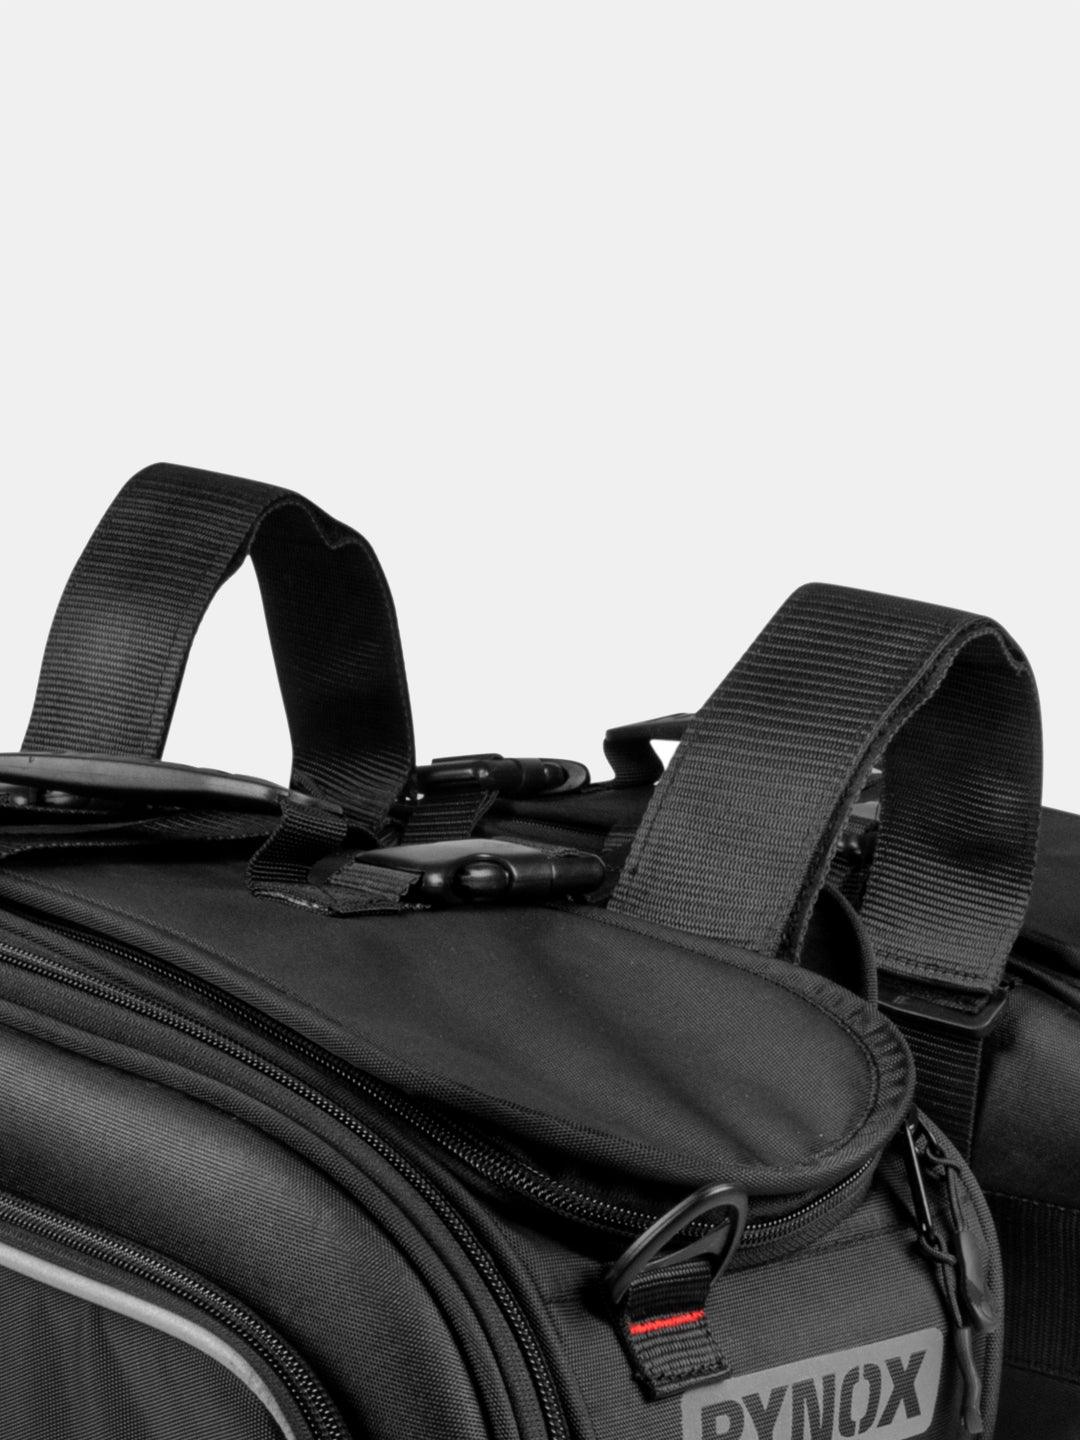 Rynox Nomad Saddle Bag - Moto Modz